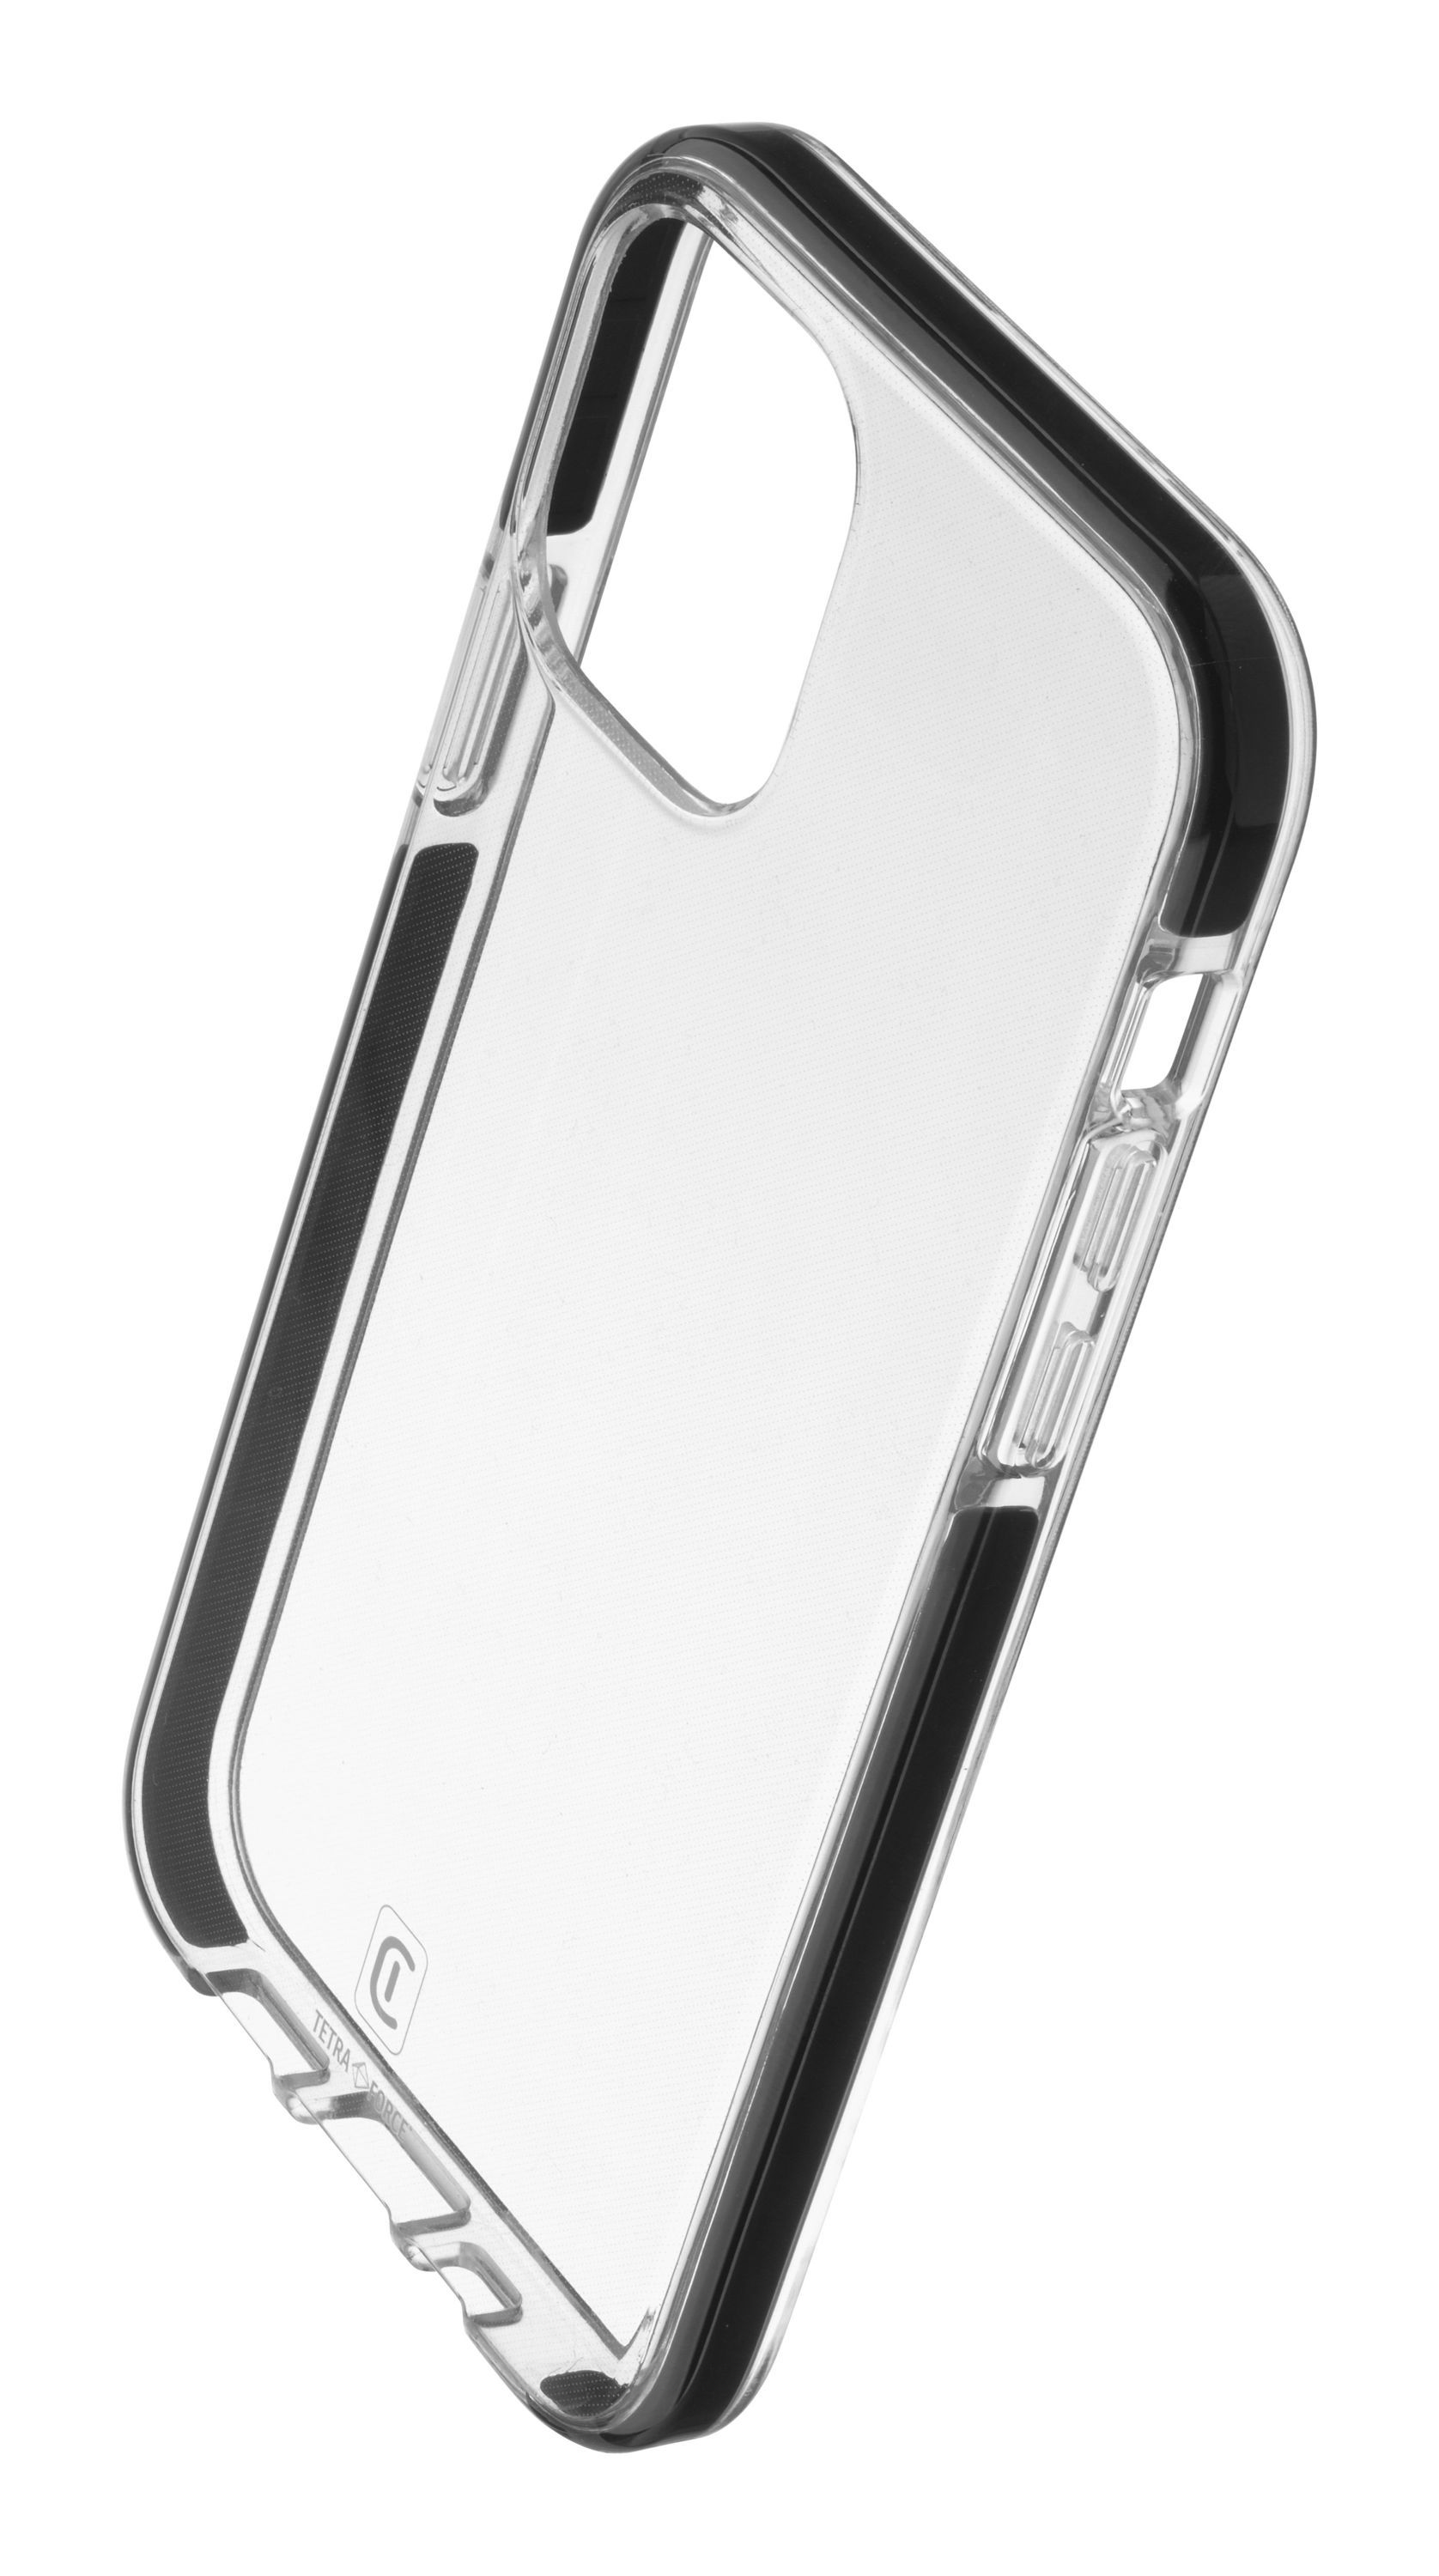 Ultra ochranné pouzdro Tetra Force Shock-Twist pro Apple iPhone 12/12 Pro, 2 stupně ochrany, transp.